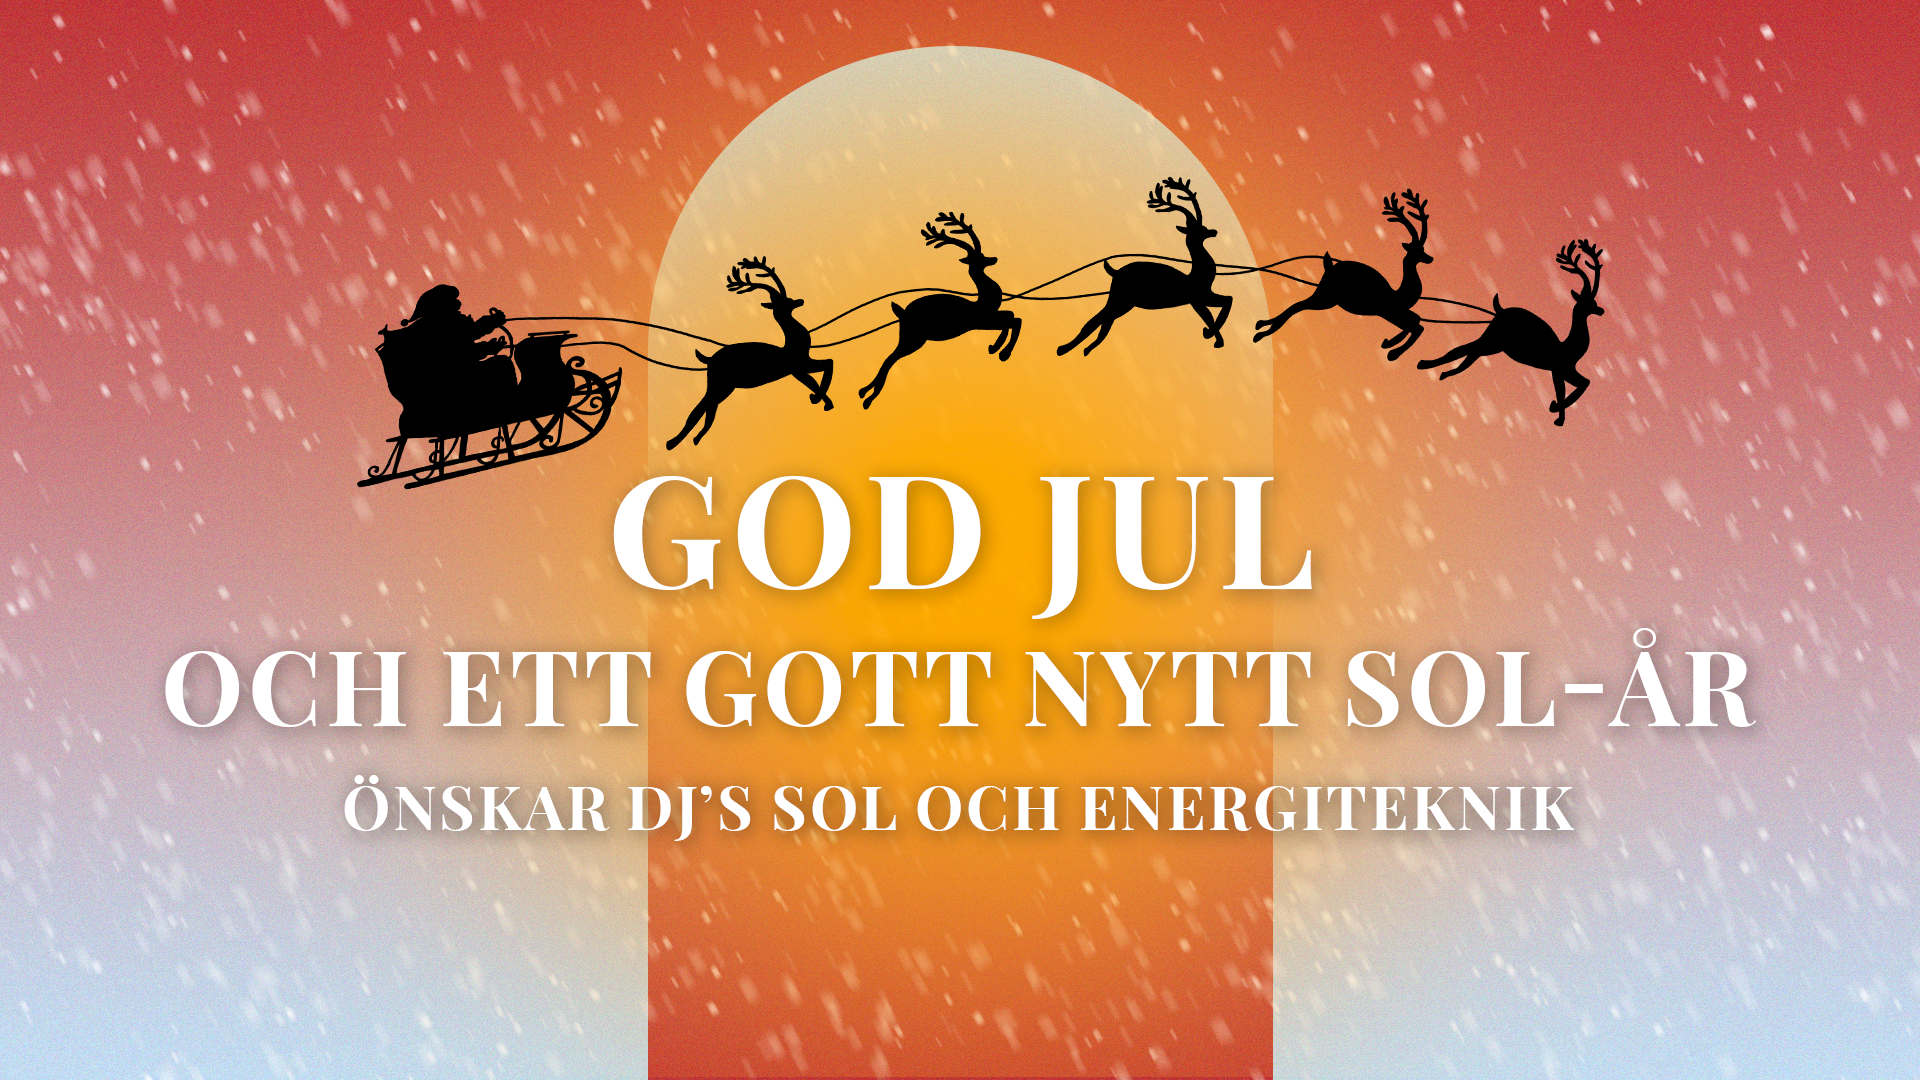 God Jul och ett Gott Nytt Sol-år!